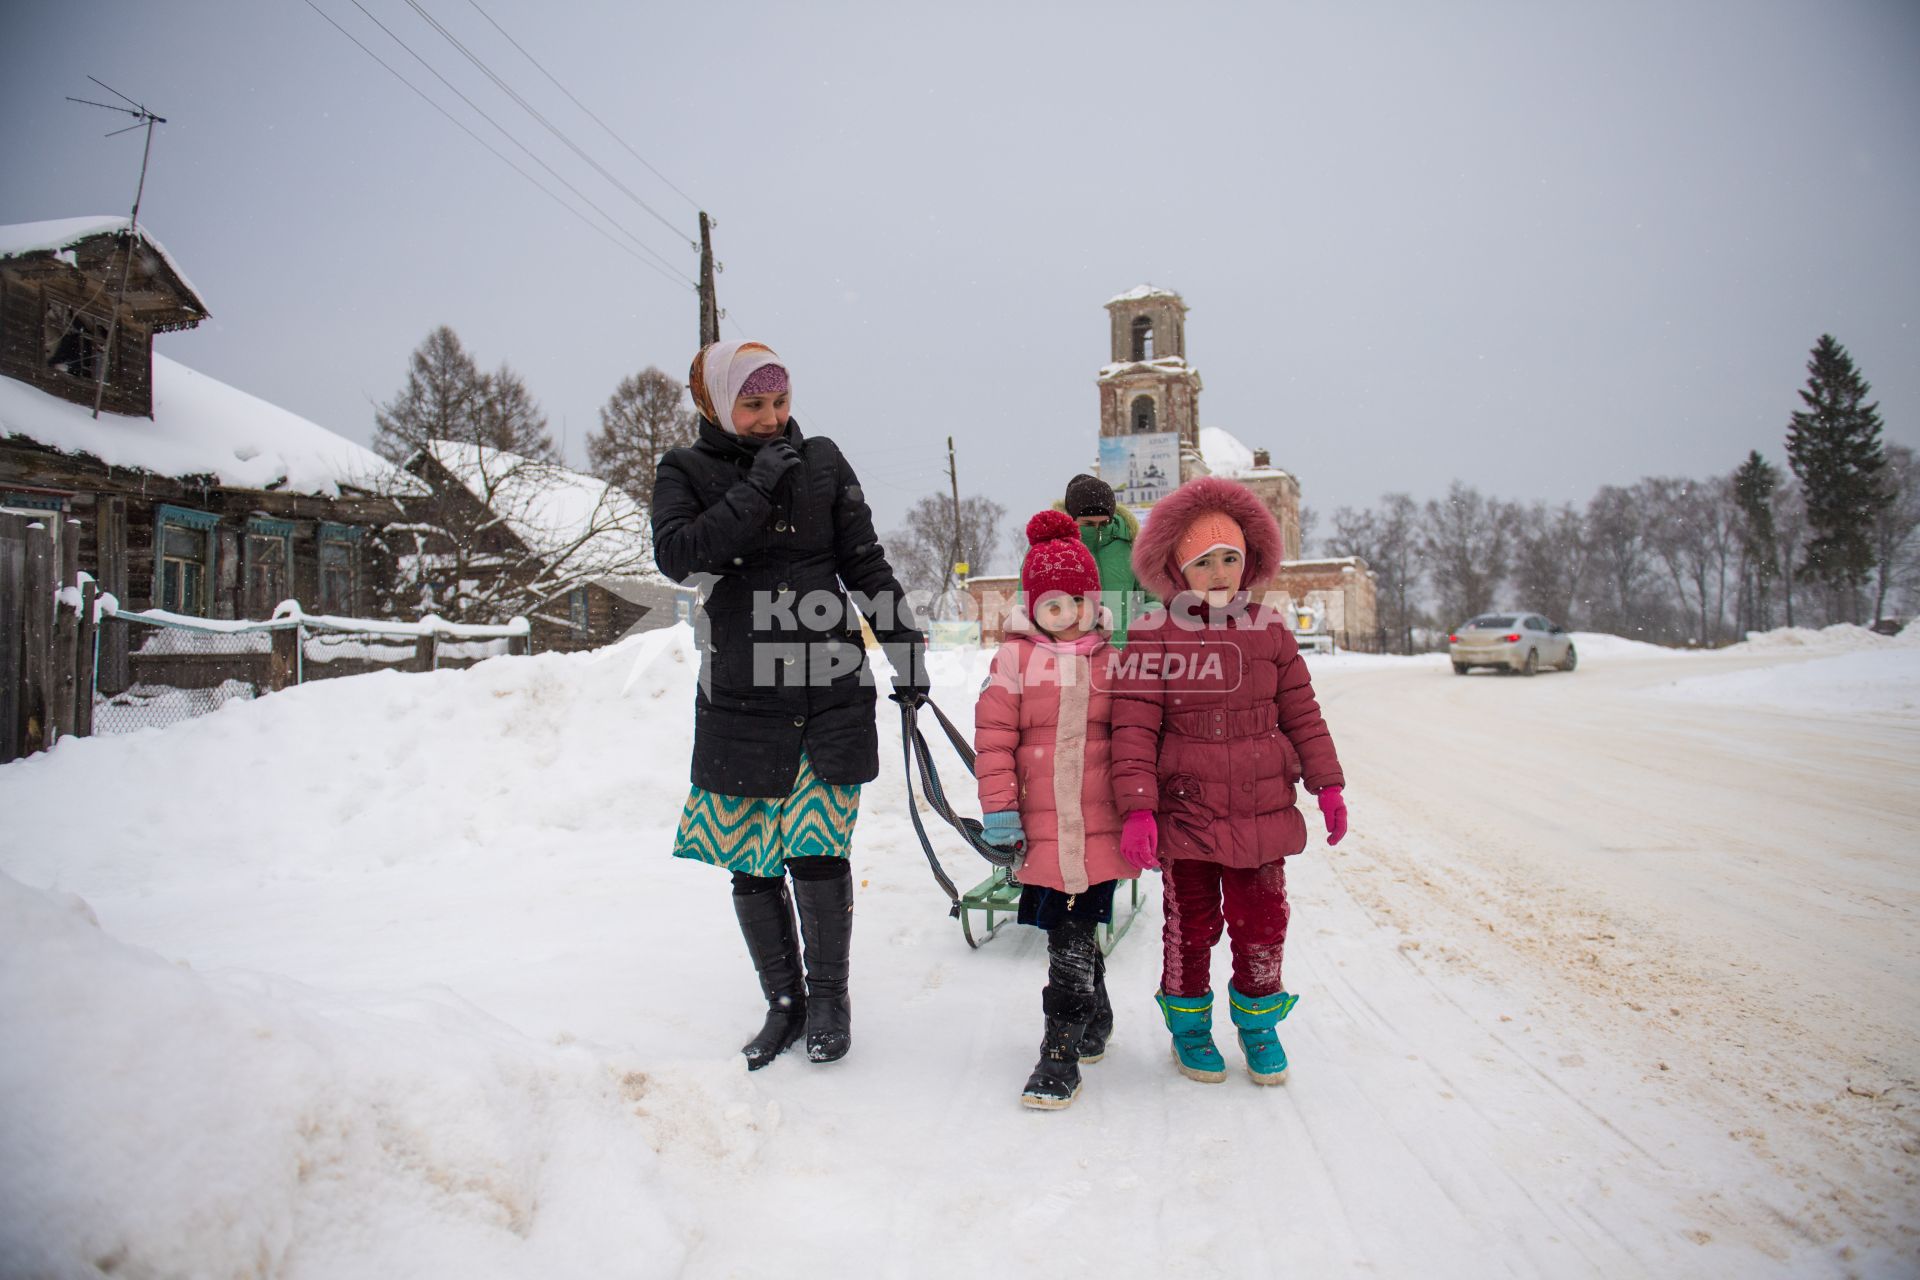 Тверская область, Рождествено.  Женщина  с детьми на  санках.